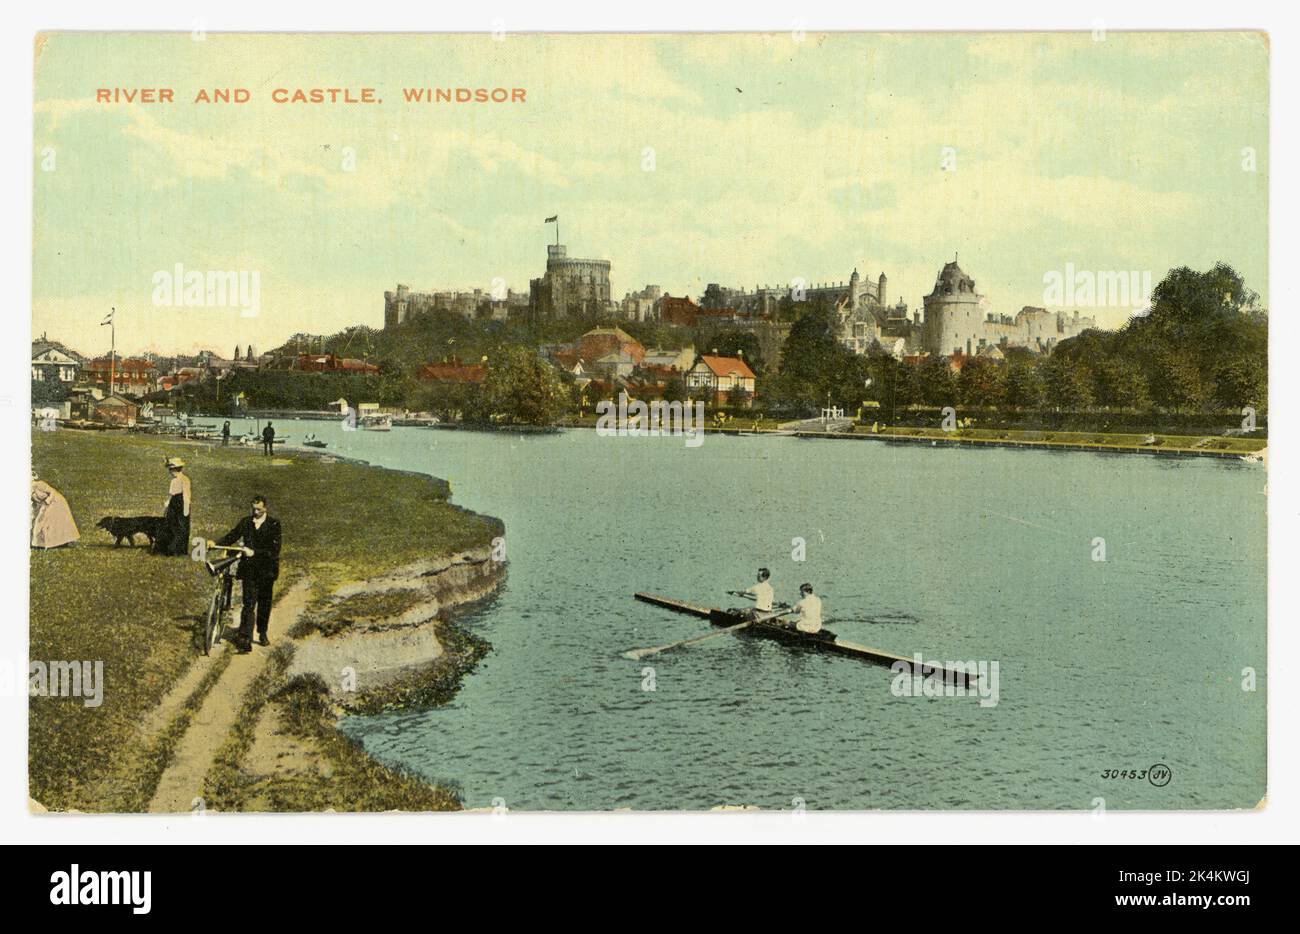 Original de la época eduardiana coloreada tarjeta postal que representa el remo delante del castillo de Windsor y el río Támesis. Windsor, Berkshire, Inglaterra, Reino Unido, alrededor de 1910 Foto de stock